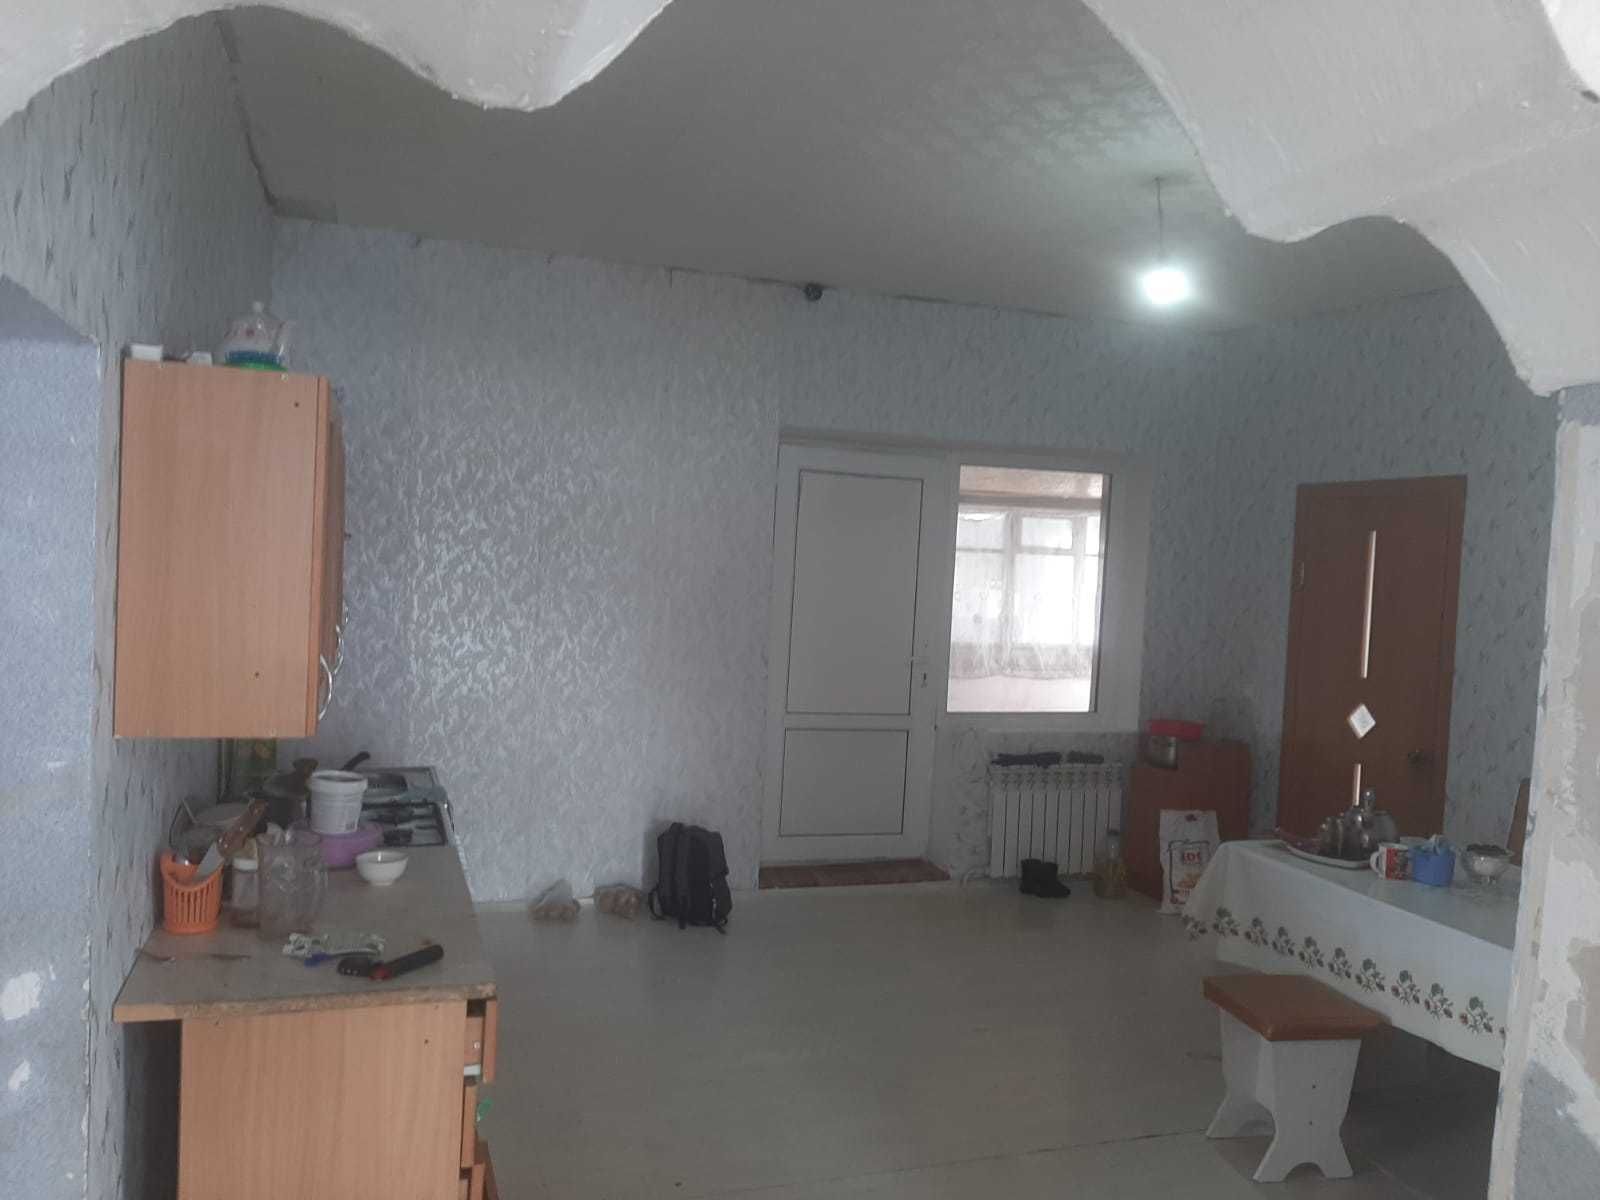 Отдельно стоящий 5ти-комнатный дом, в Соцгороде, район "Пятачка"